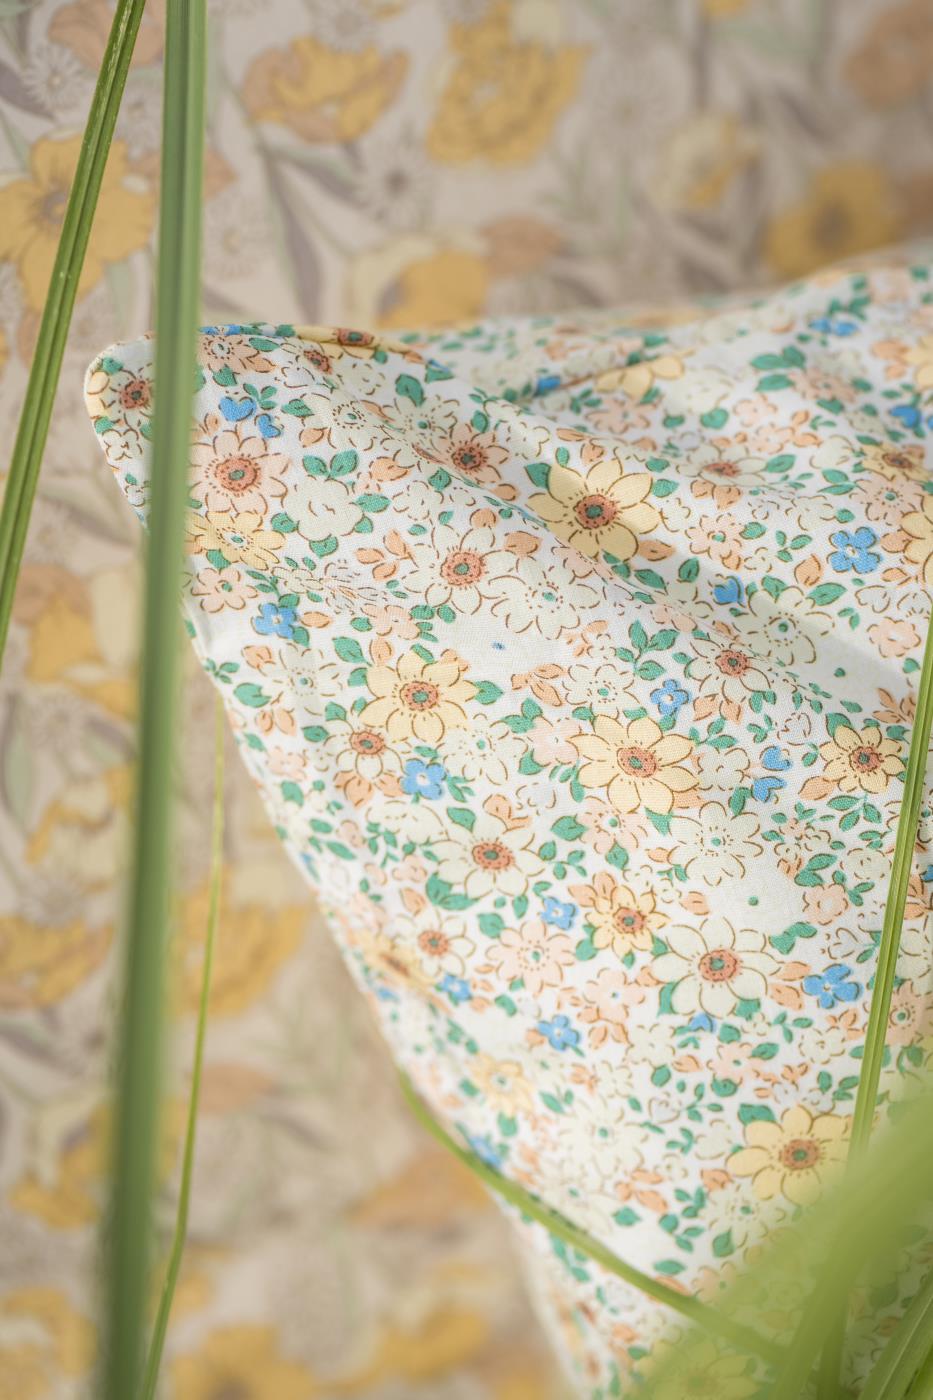 Ib Laursen Kissenbezug mit zartgelben, rosa und blauen Blumen, grünen Blättern